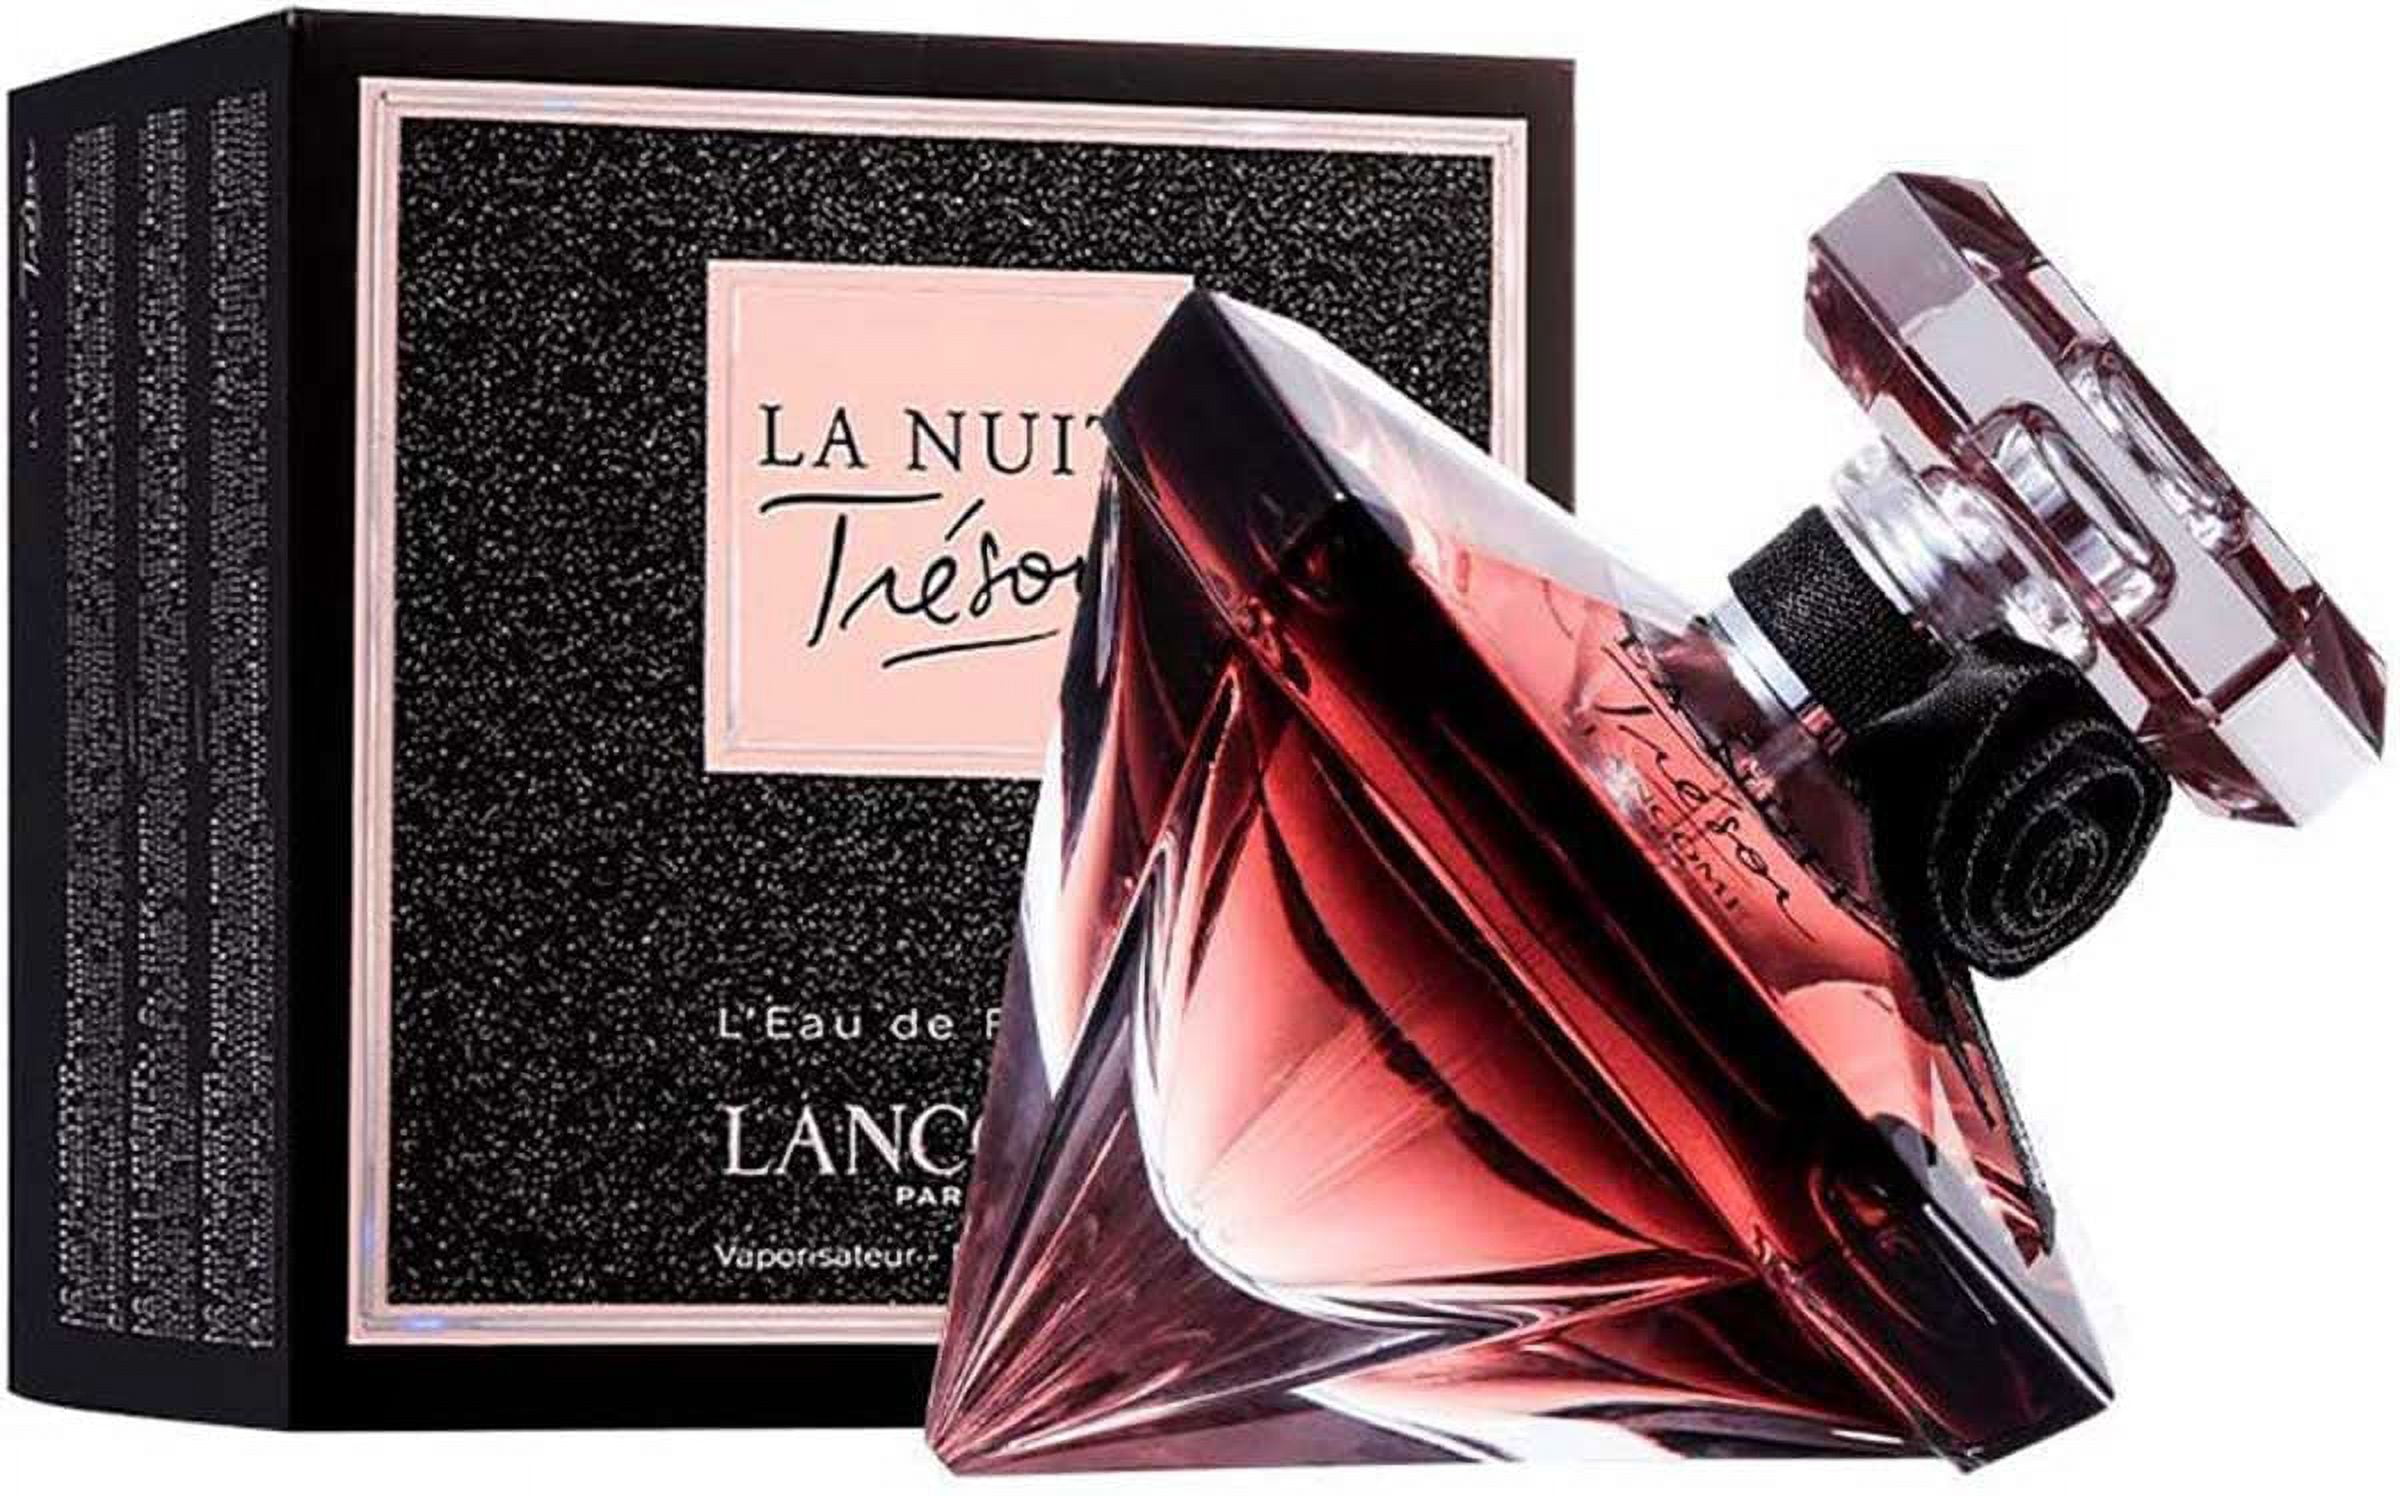 Lancome La Nuit Tresor Eau de Parfum, Perfume for Women, 1.7 Oz